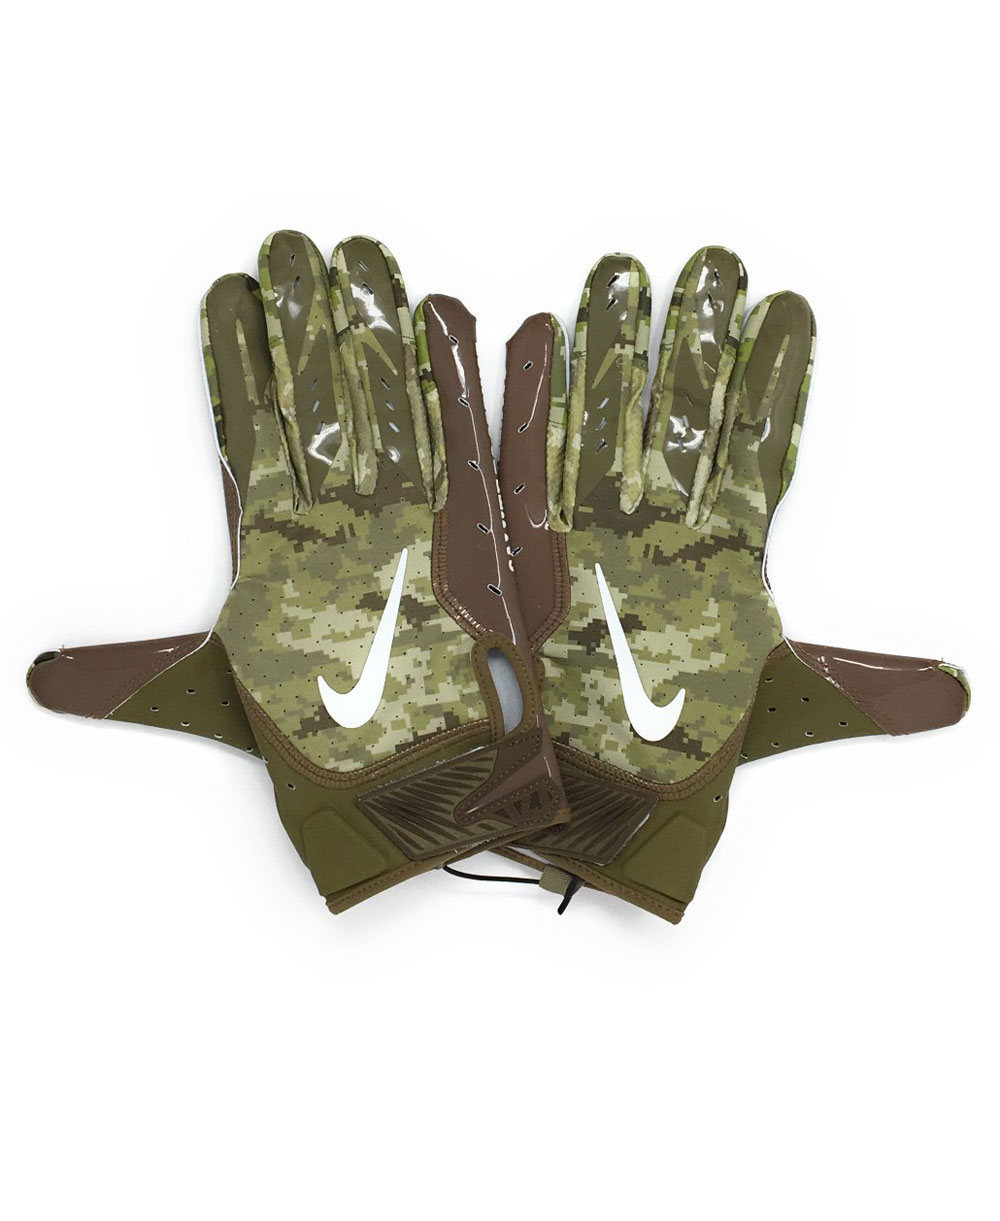 nike vapor 5.0 football gloves